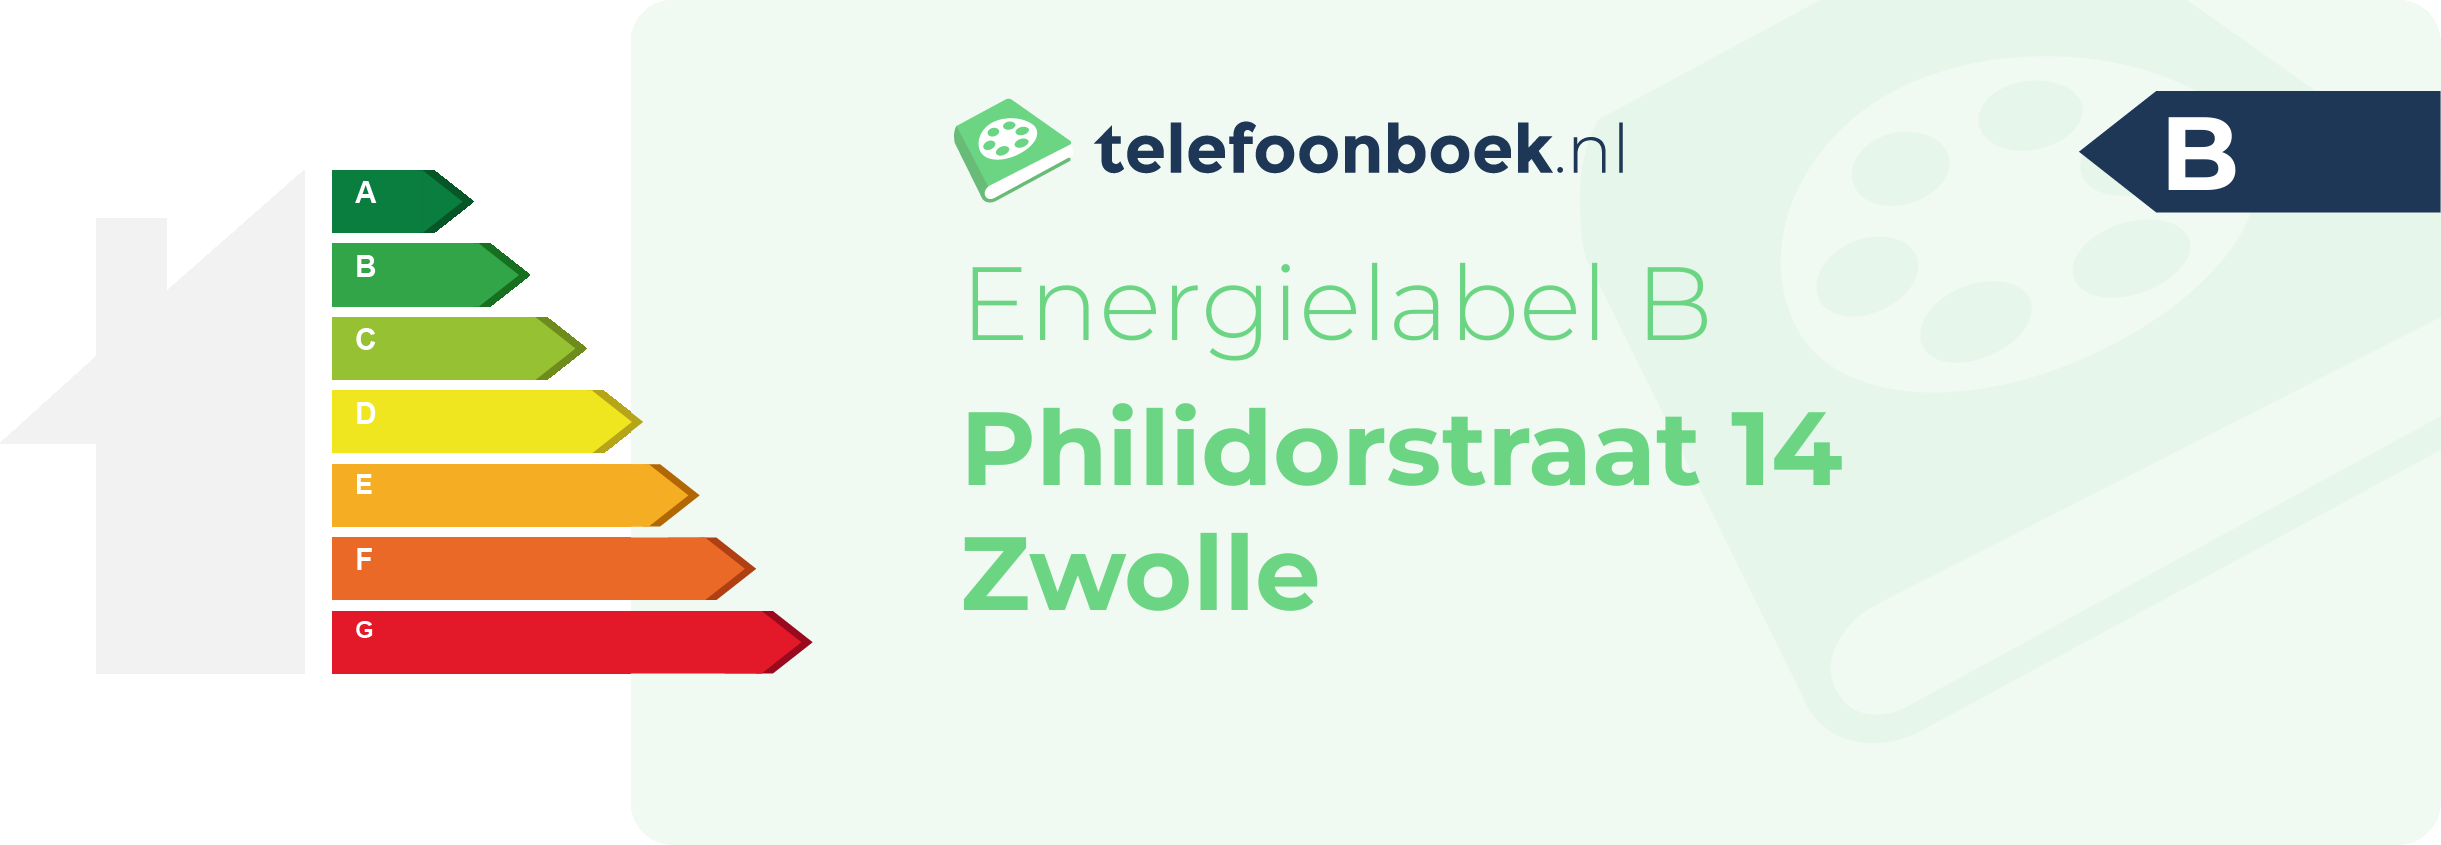 Energielabel Philidorstraat 14 Zwolle